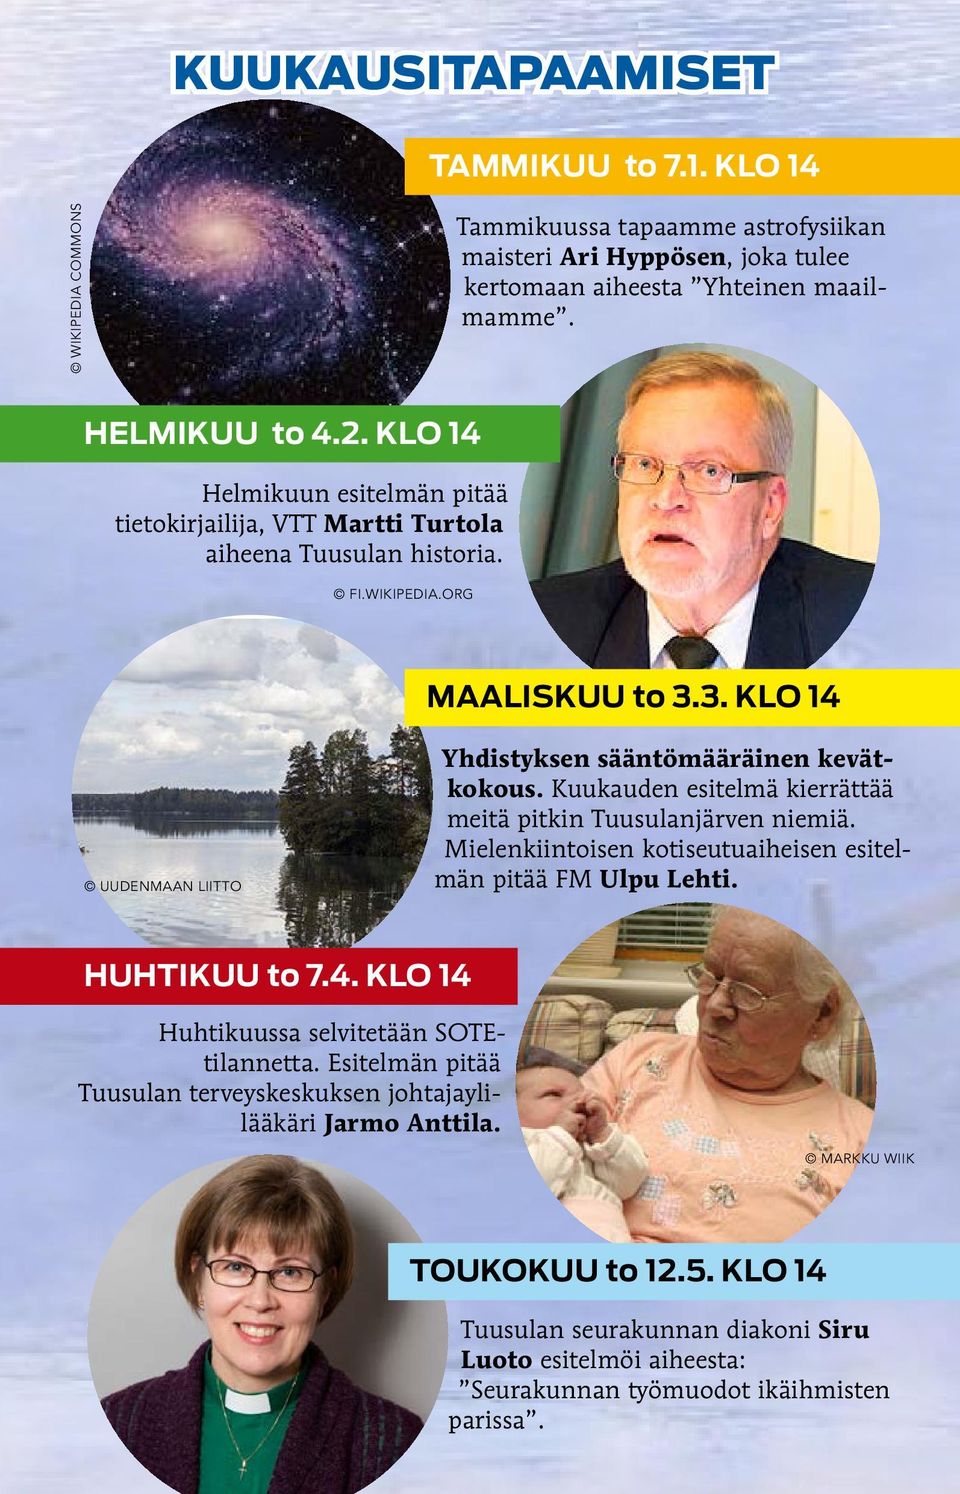 Kuukauden esitelmä kierrättää meitä pitkin Tuusulanjärven niemiä. Mielenkiintoisen kotiseutuaiheisen esitelmän pitää FM Ulpu Lehti. HUHTIKUU to 7.4. KLO 14 Huhtikuussa selvitetään SOTEtilannetta.